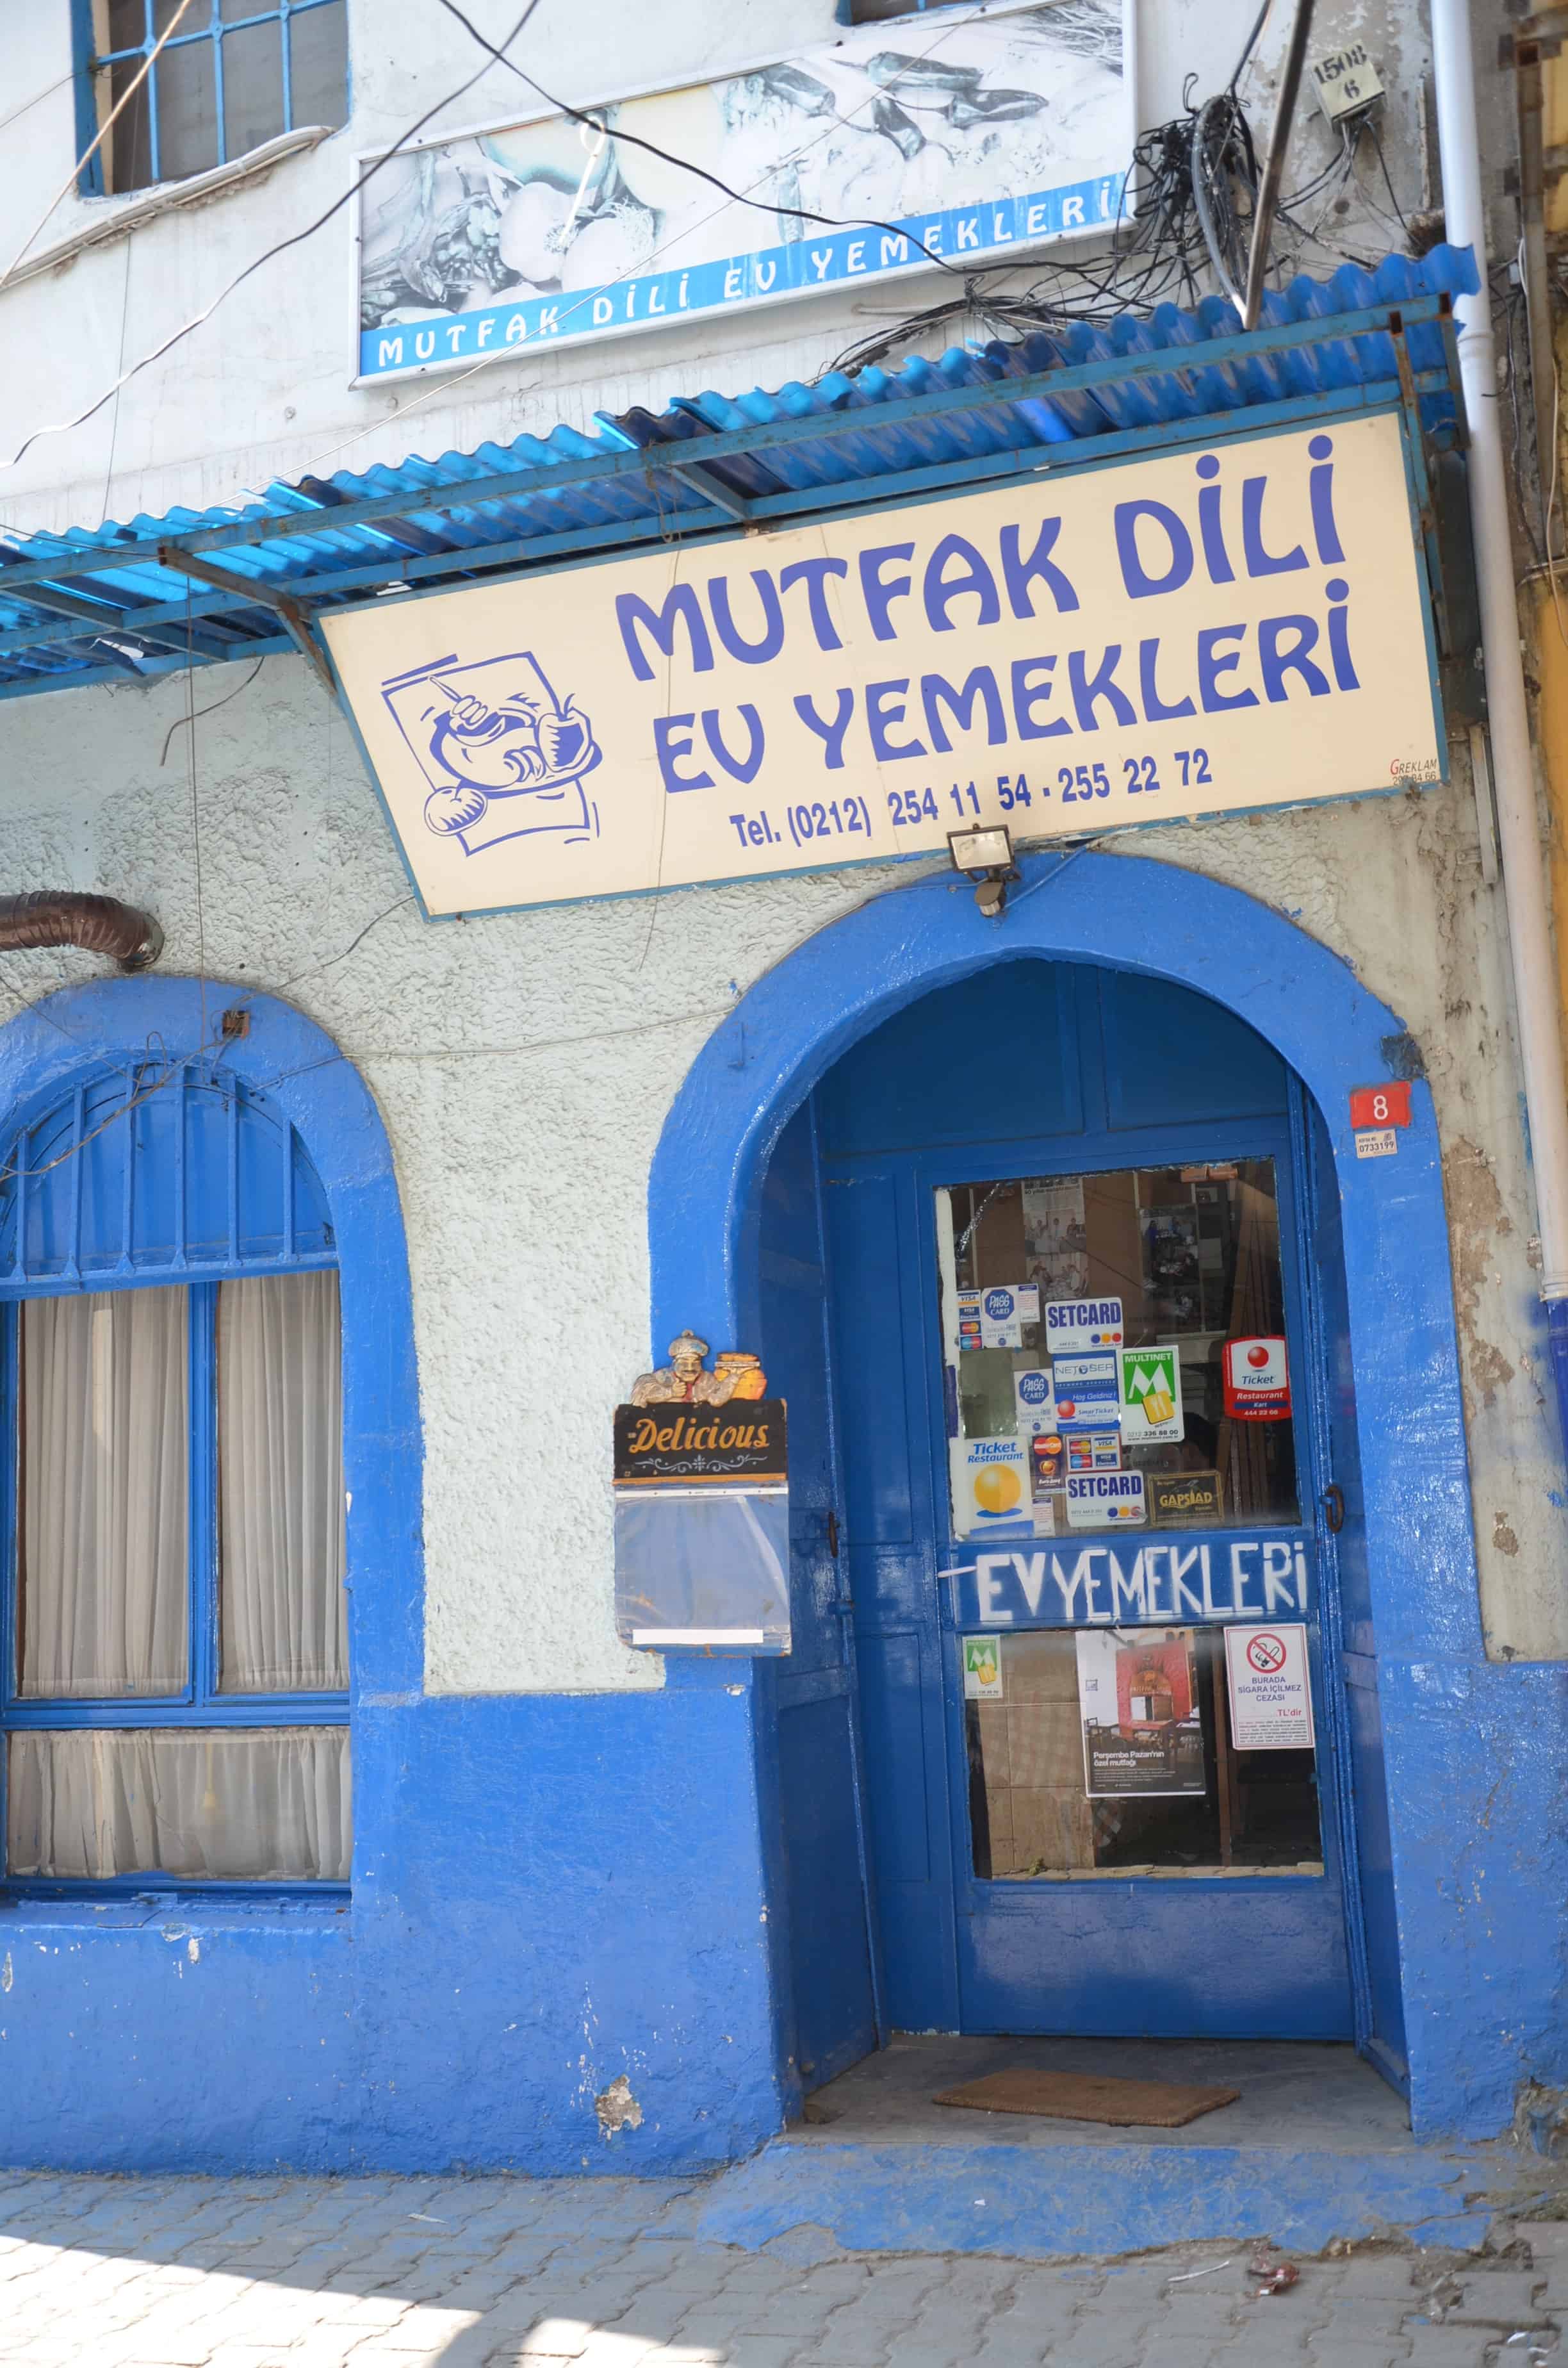 Mutfak Dili Ev Yemekleri in Karaköy, Beyoğlu, Istanbul, Turkey